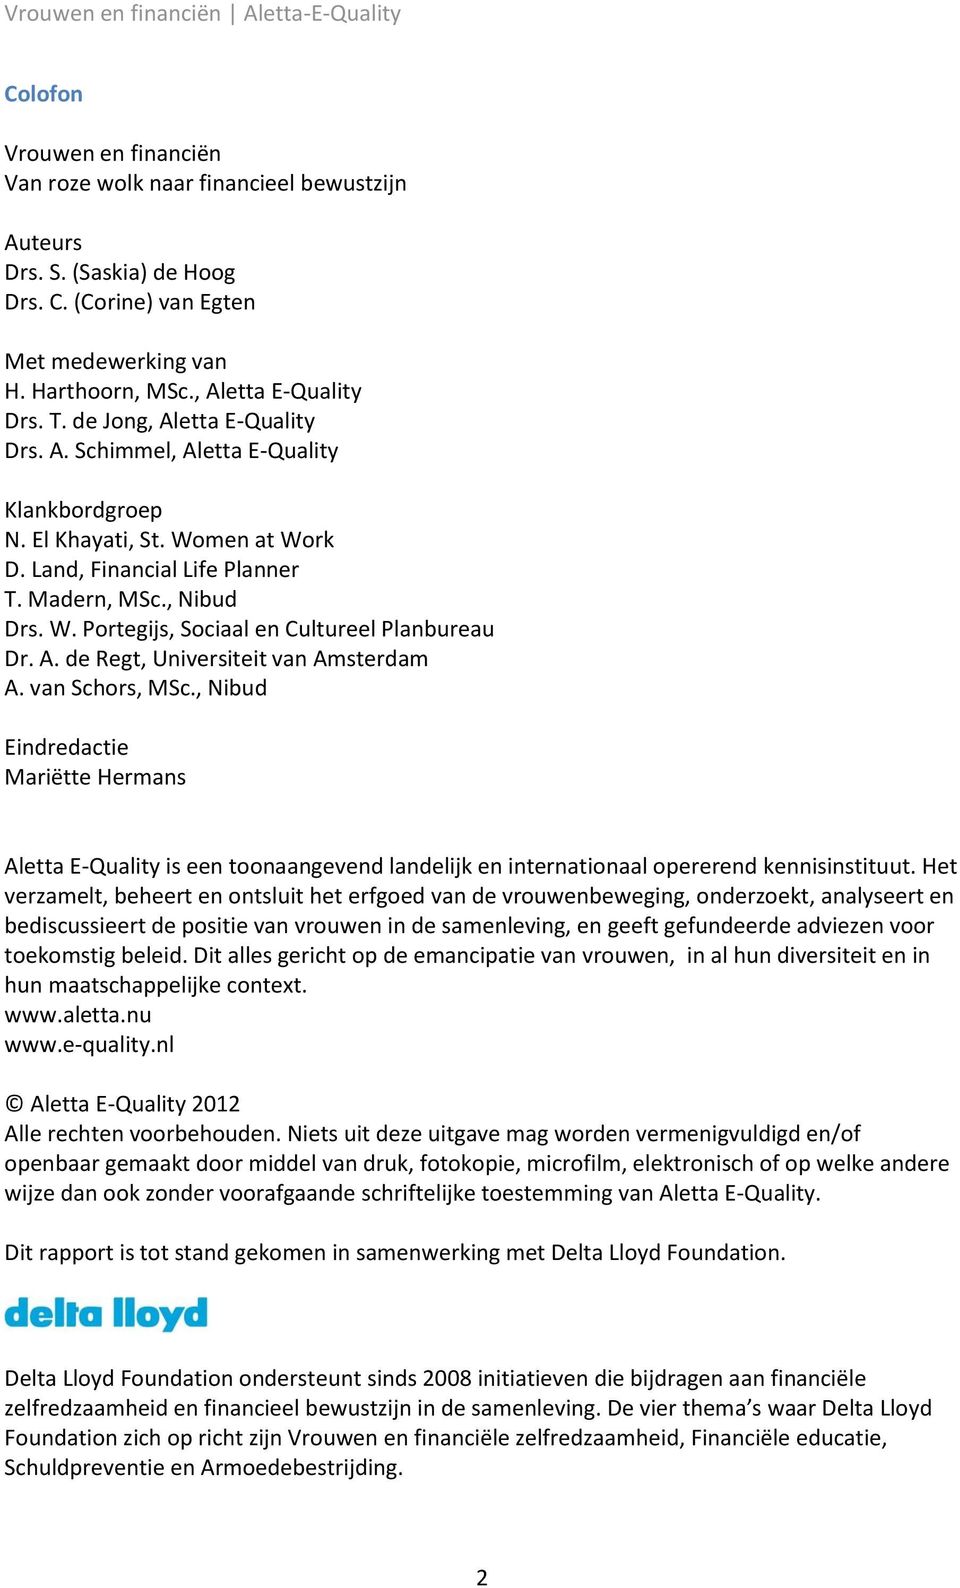 A. de Regt, Universiteit van Amsterdam A. van Schors, MSc., Nibud Eindredactie Mariëtte Hermans Aletta E-Quality is een toonaangevend landelijk en internationaal opererend kennisinstituut.